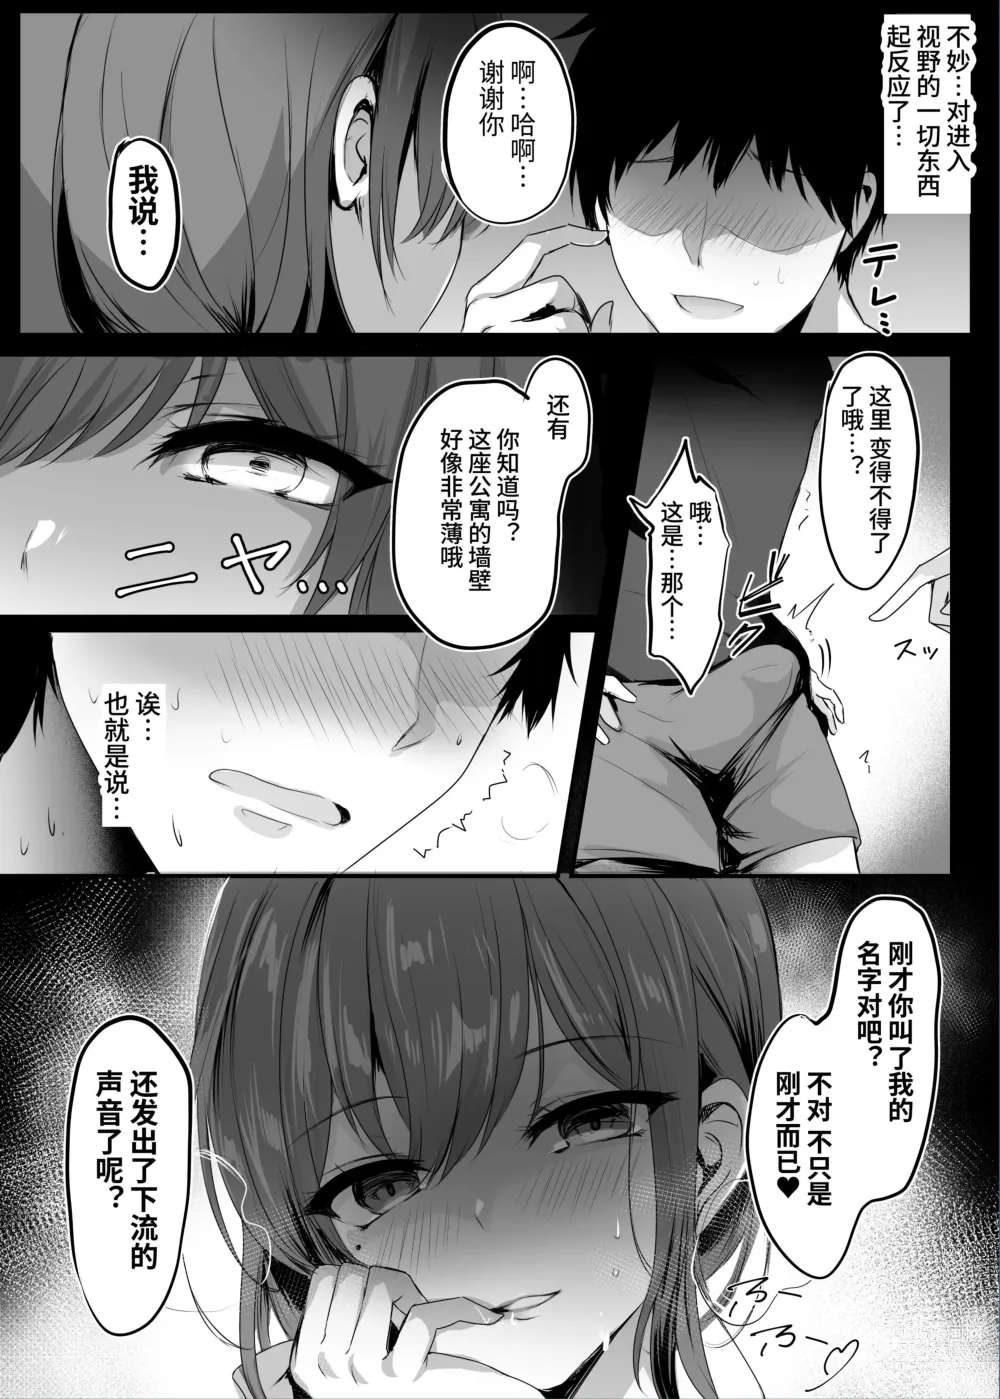 Page 14 of doujinshi Numaru.